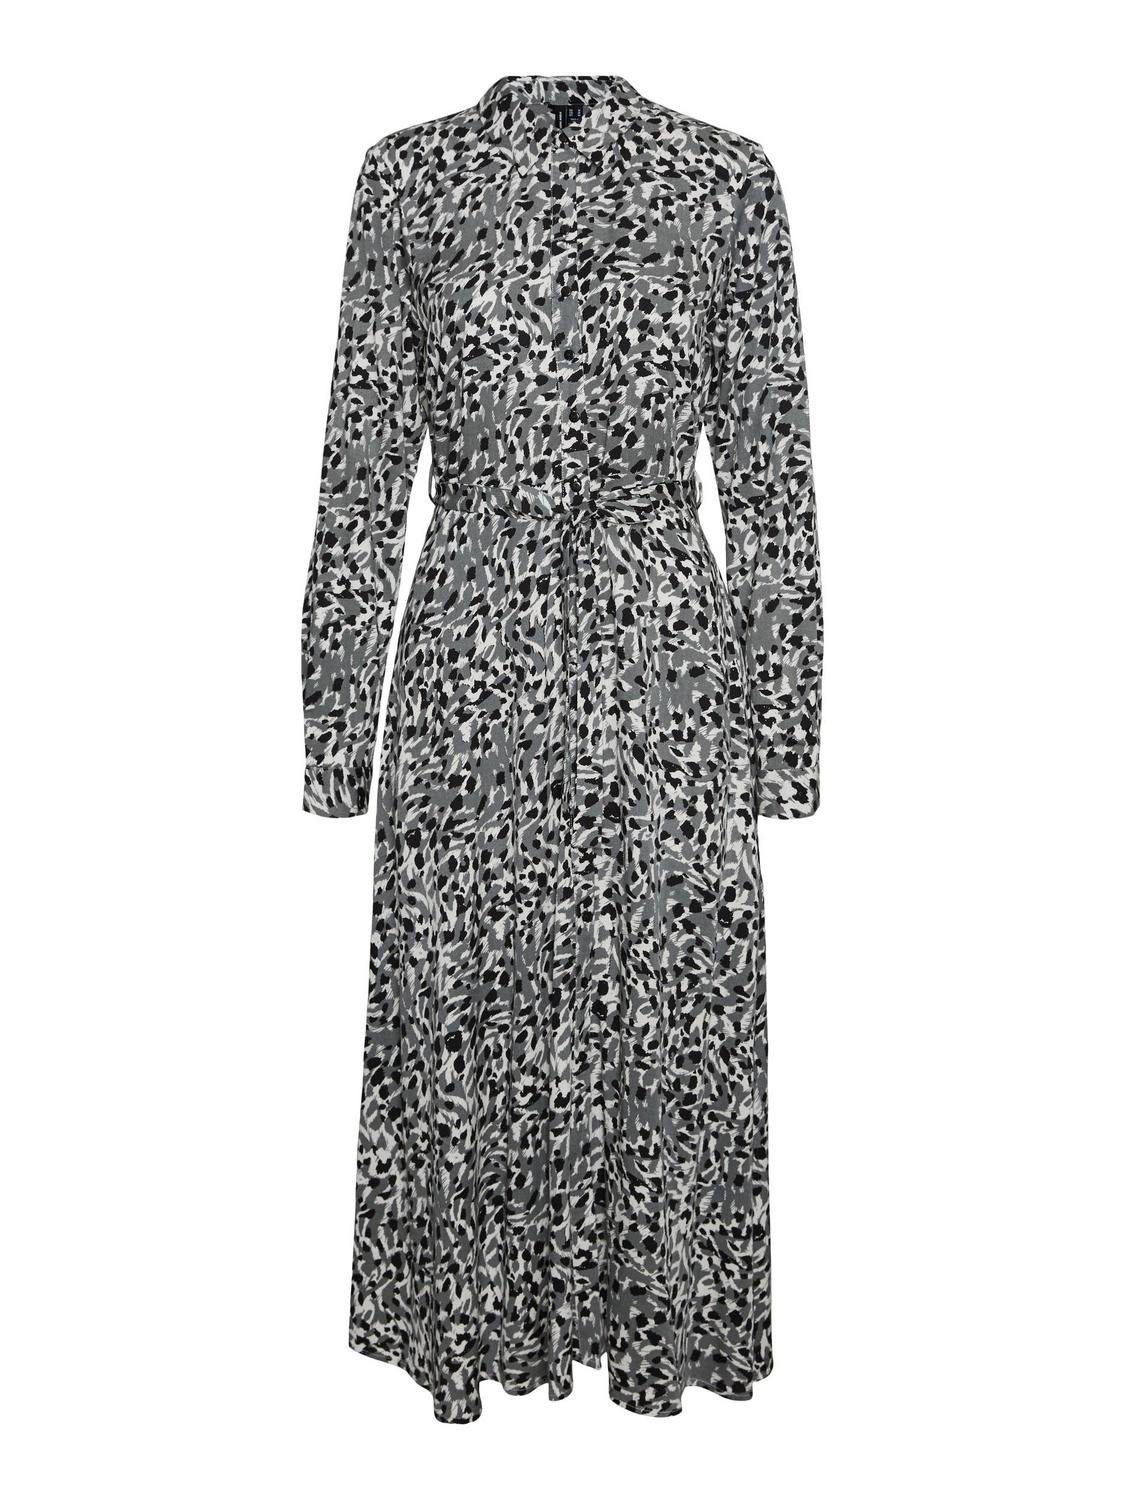 CALF MERLE Sommerkleid DRESS WVN LS SHIRT VMDEB Moda Vero